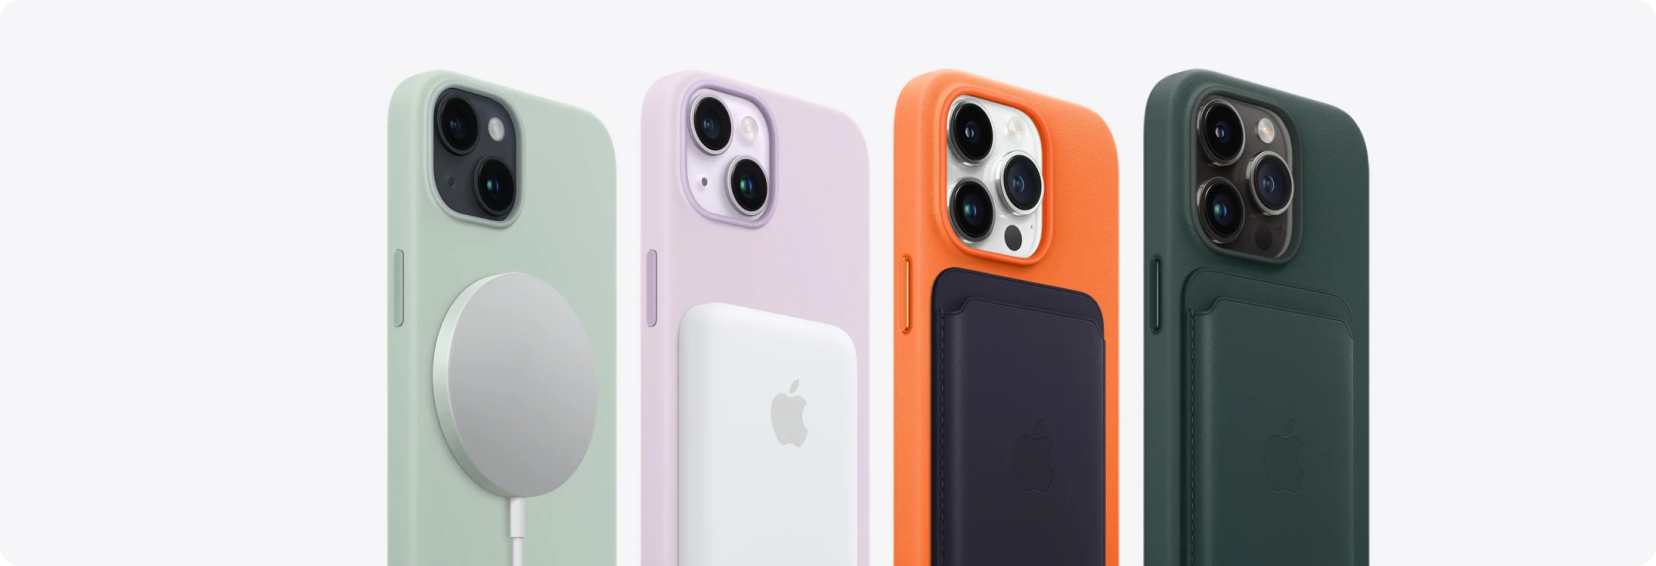 iPhone 12 mini купить в Беларуси: Айфон 12 мини цена, гарантия, рассрочка |  i-Store